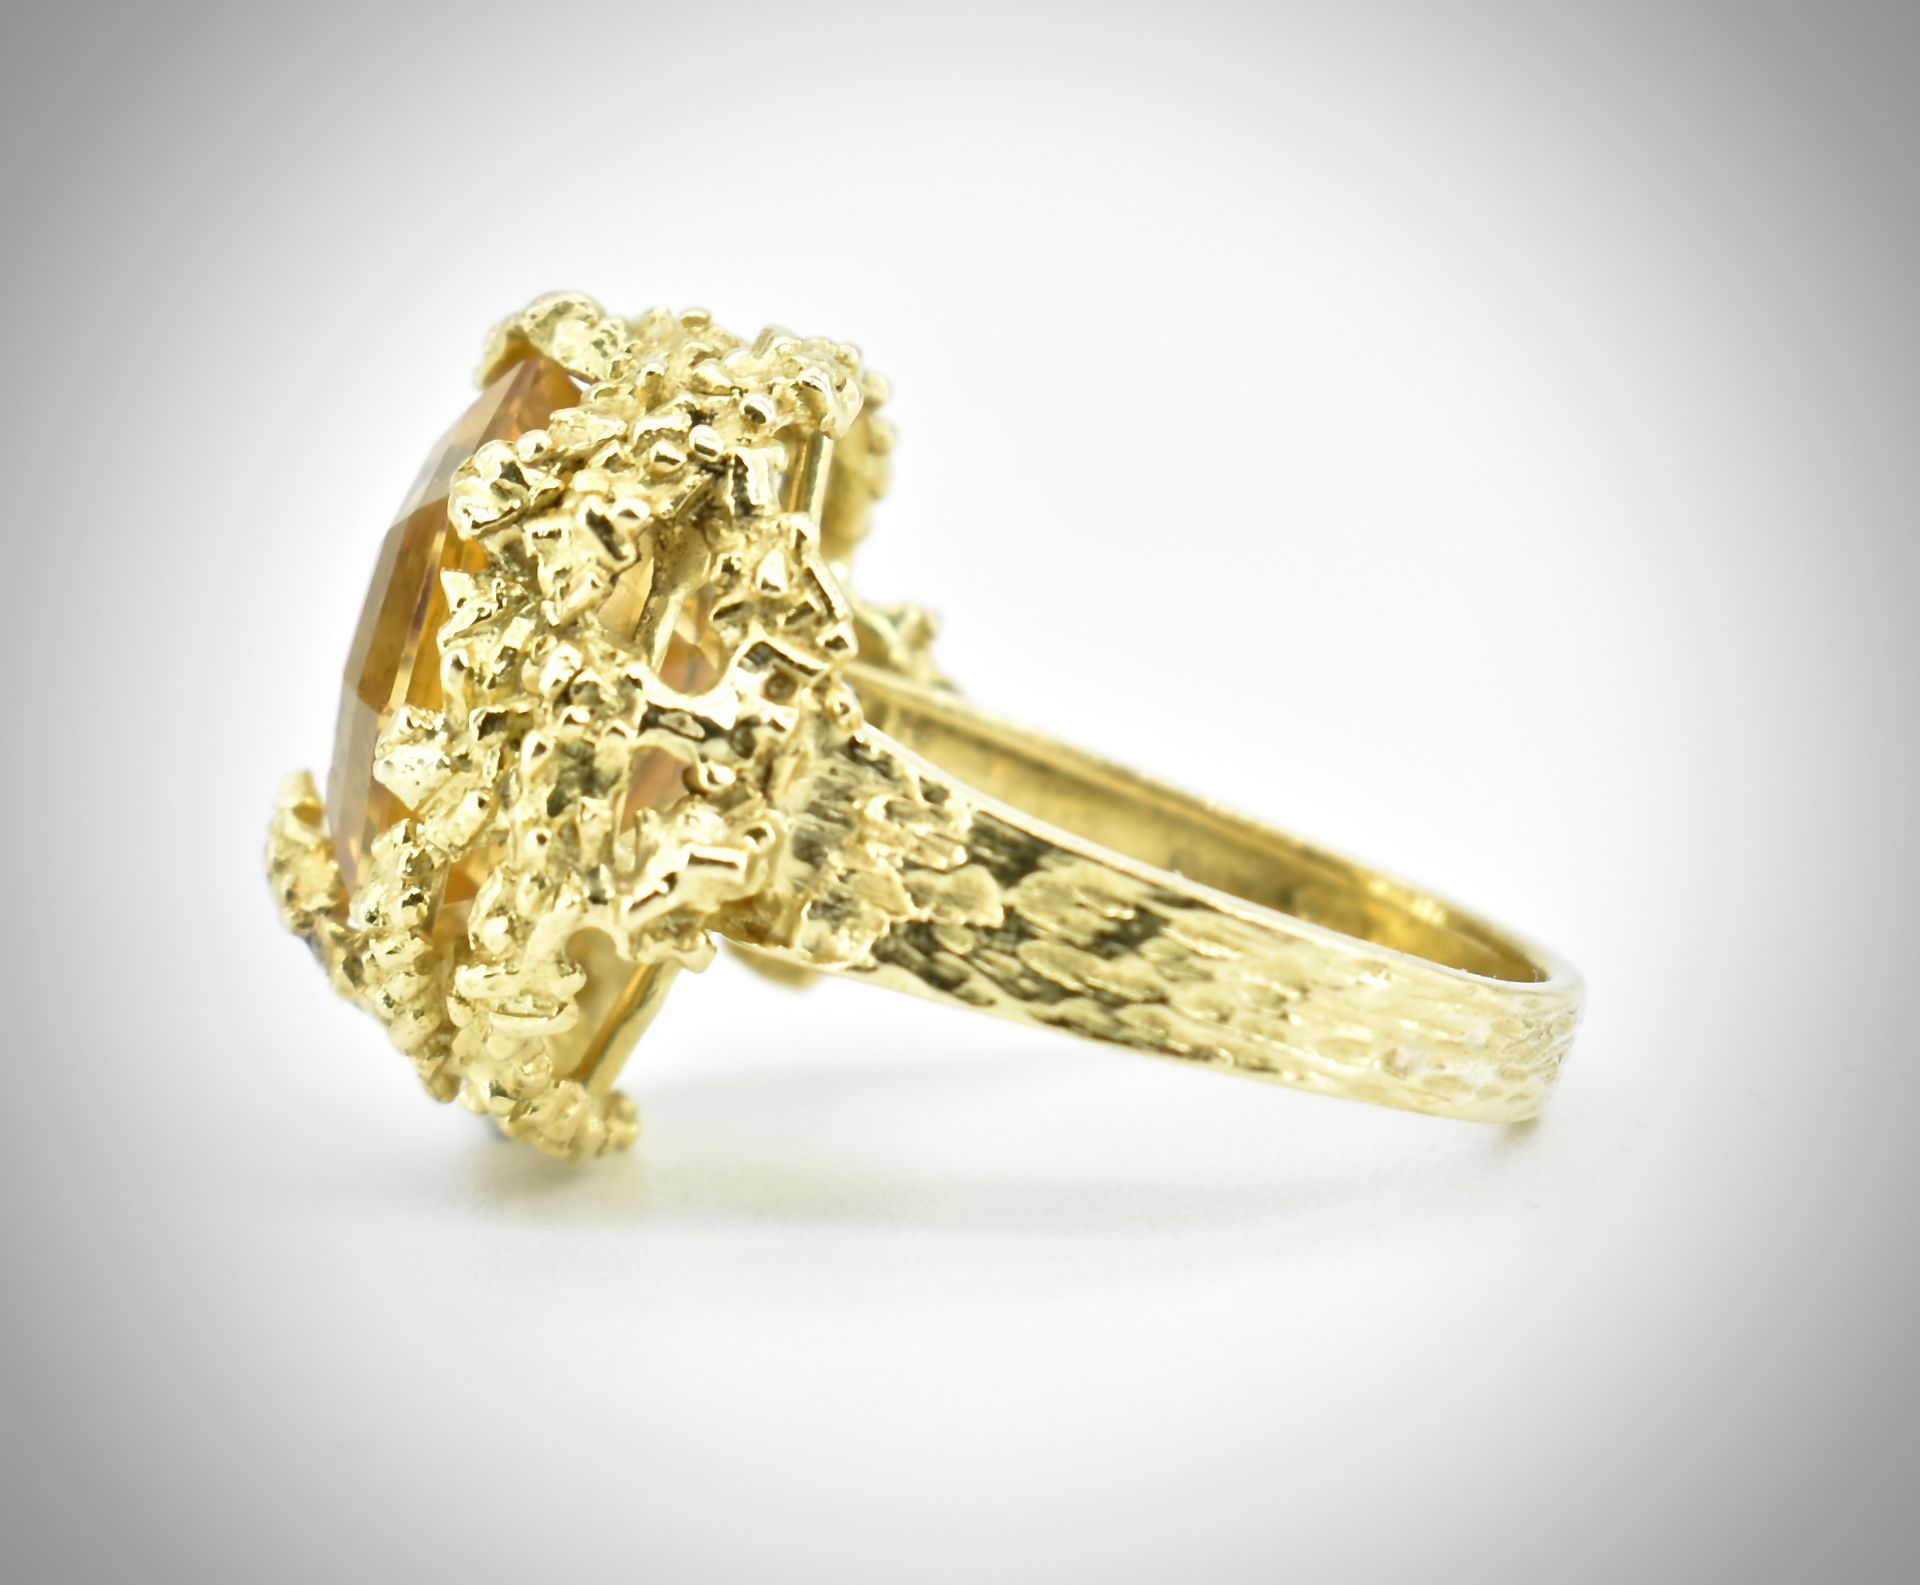 Alan Martin Gard - 18ct Gold Citrine Diamond Ring 1968 - Image 6 of 10